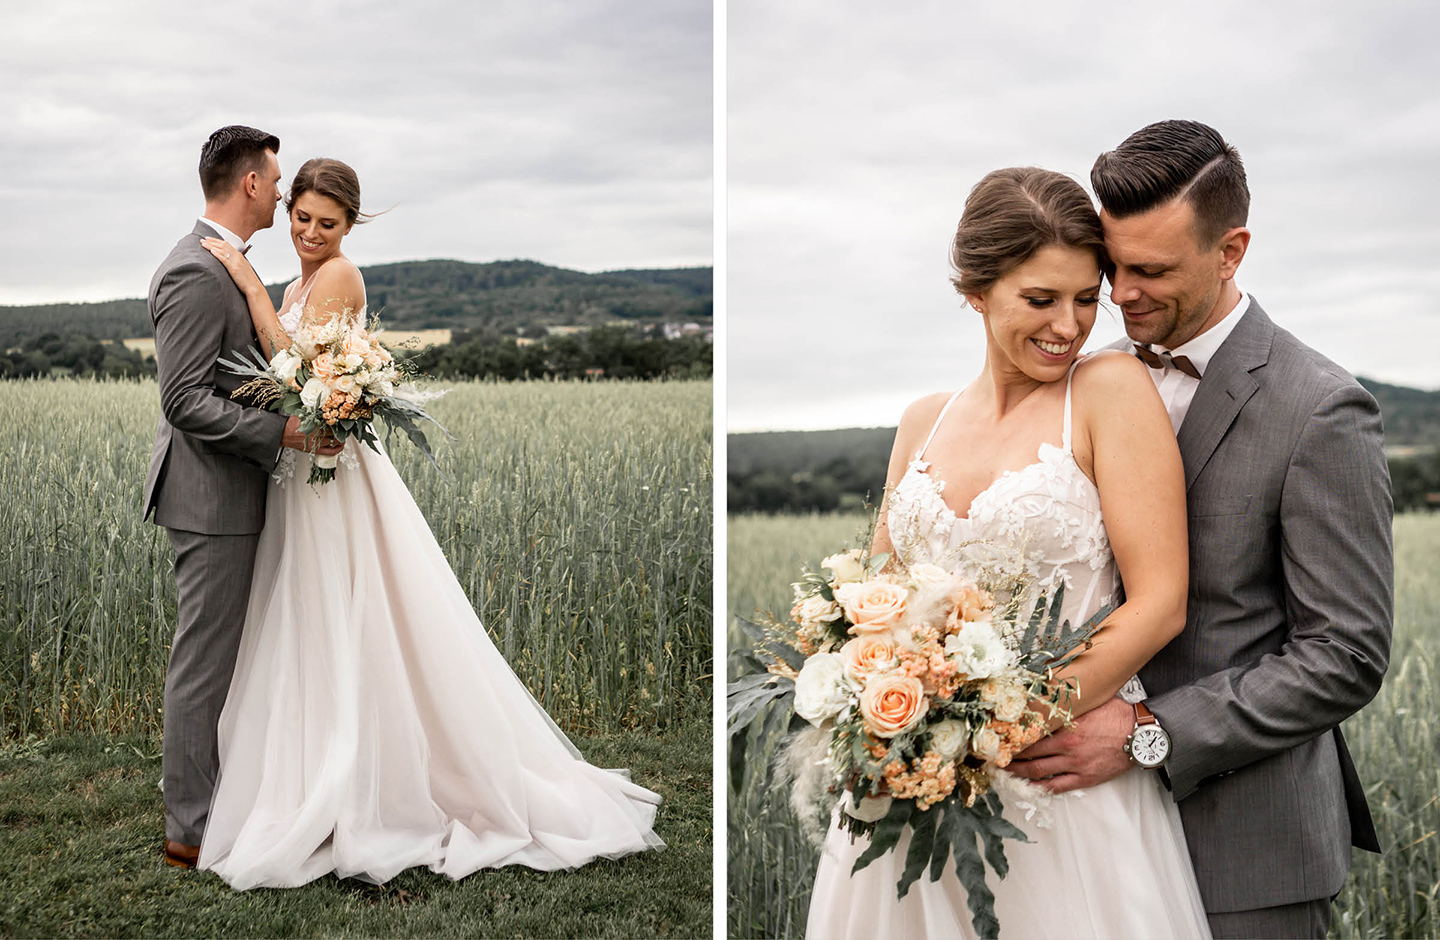 Brautpaar-Shooting auf einem Kornfeld. Die Braut trägt ein weißes schlichtes Hochzeitskleid und hält einen Brautstrauß aus weißen und roséfarbenen Blumen in der Hand. Der Bräutigam trägt einen grauen Anzug.